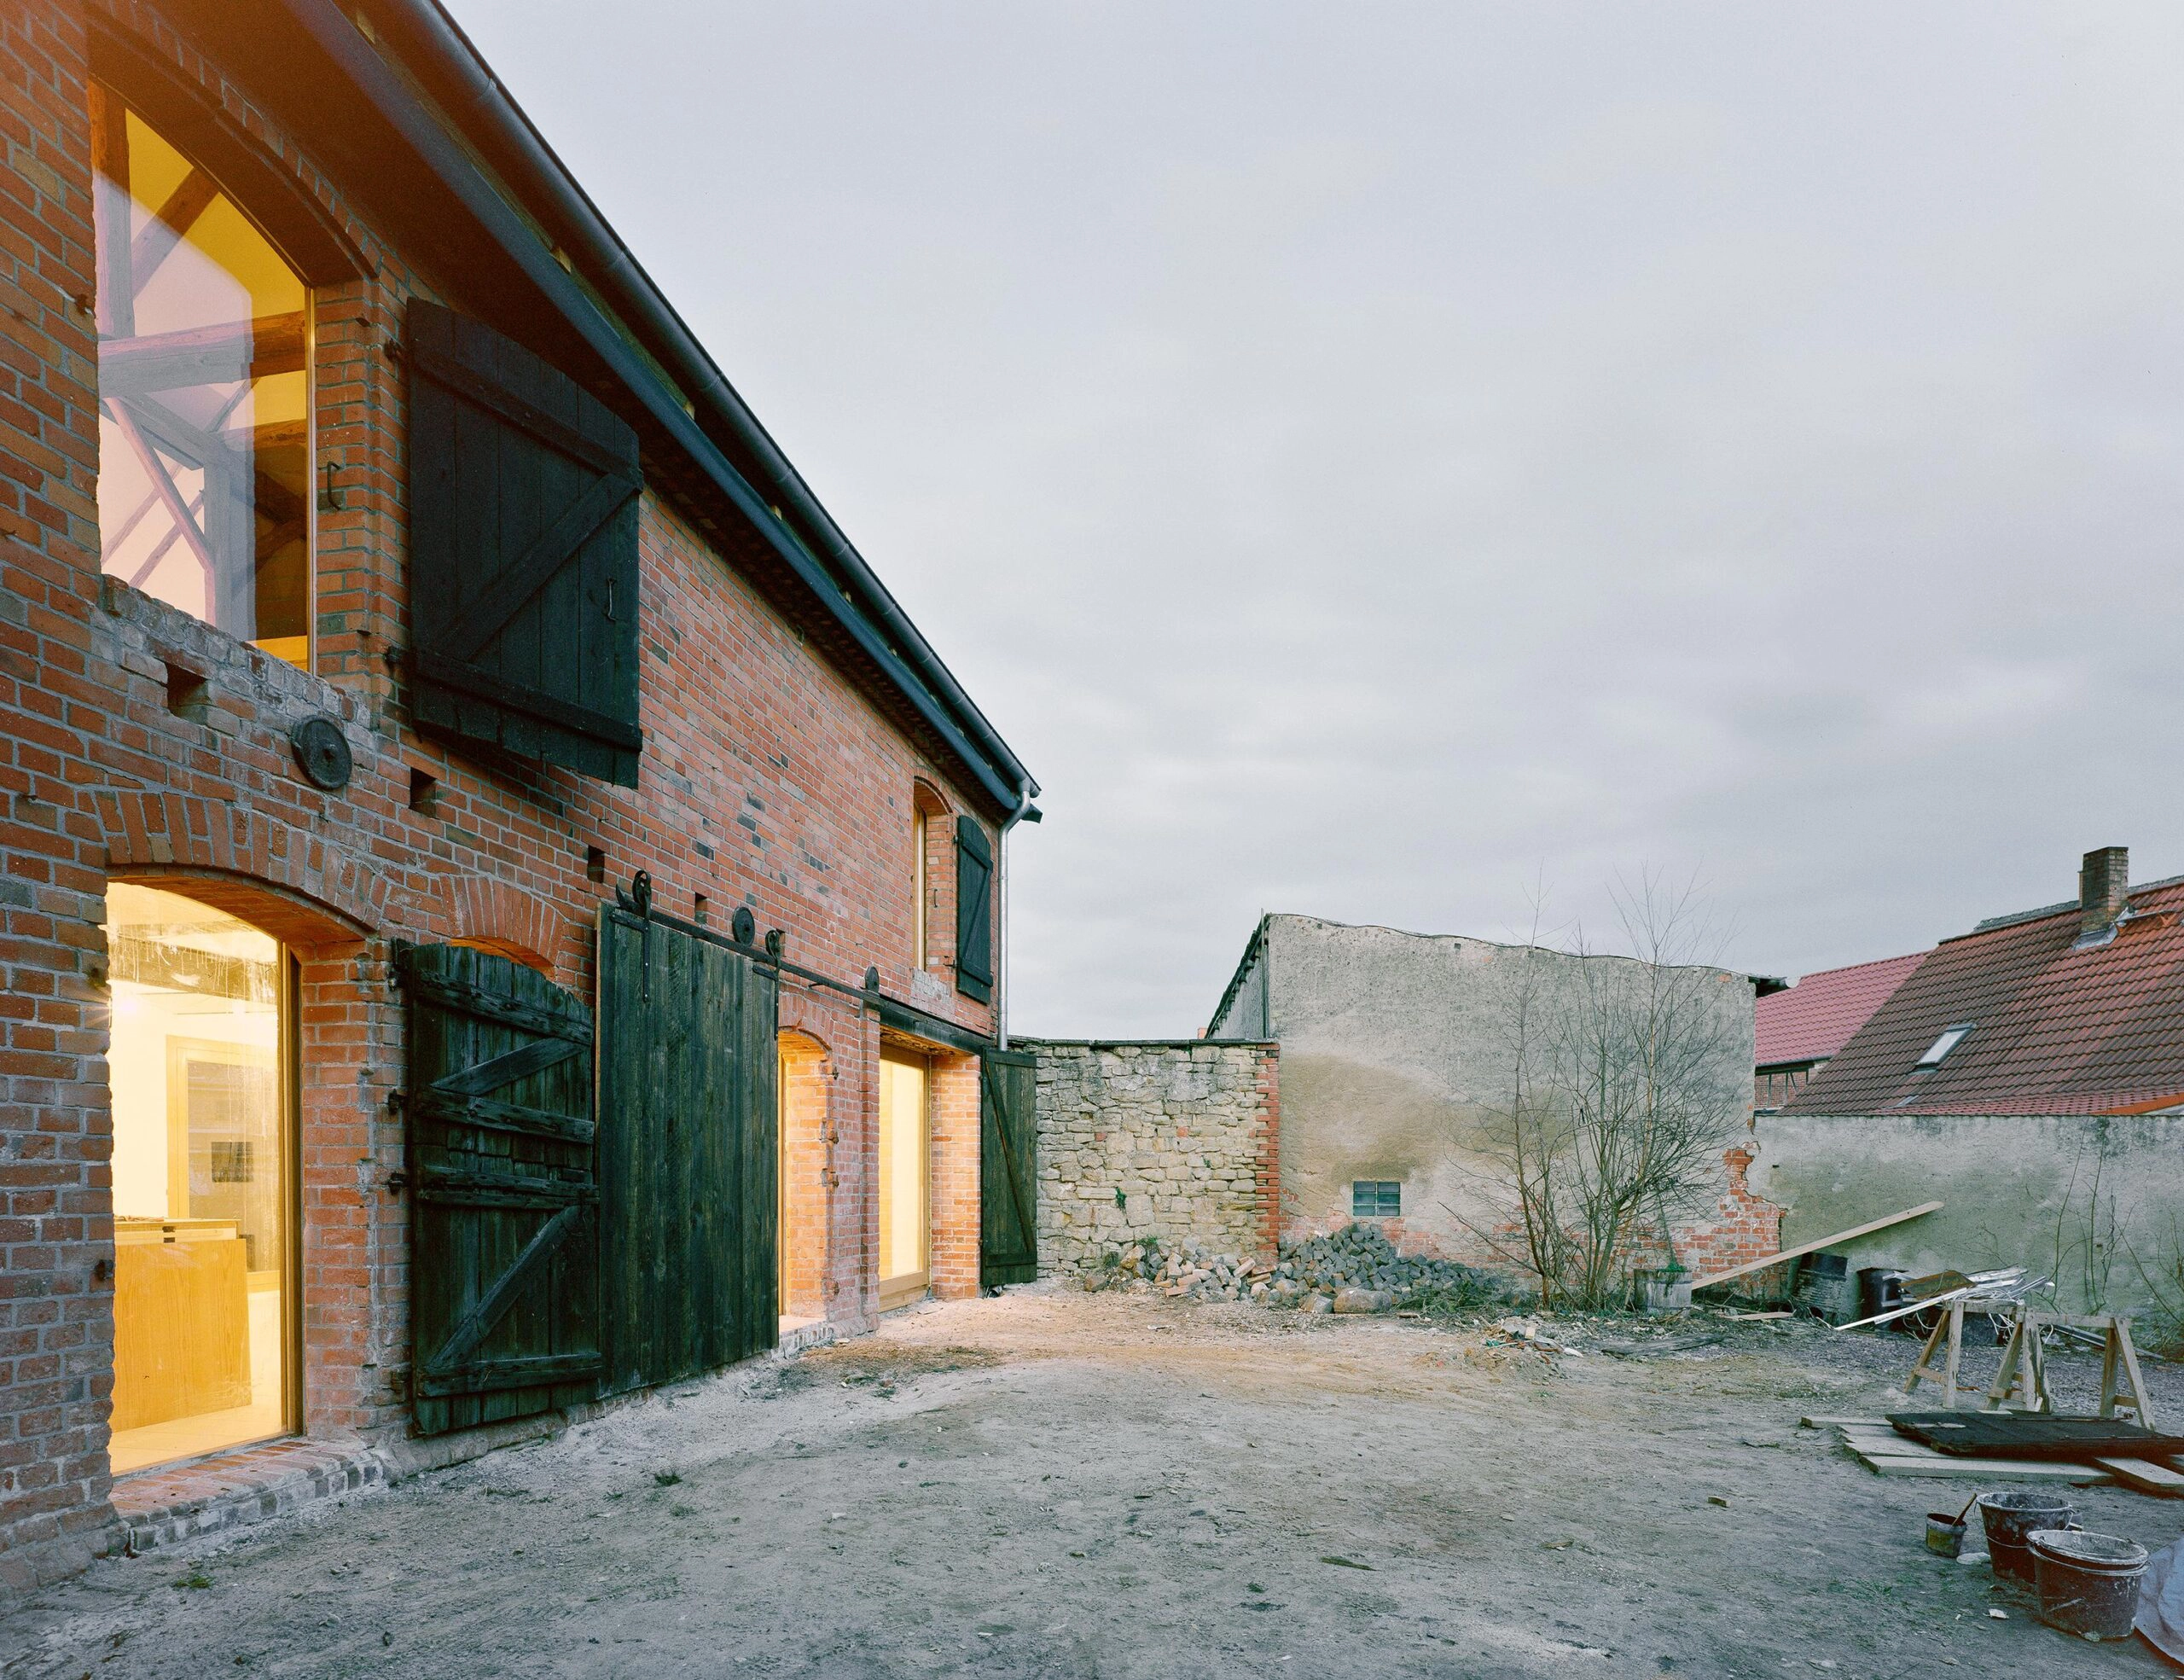 Projekt „Haus Stein” to przebudowa murowanej stodoły z lat 30-tych